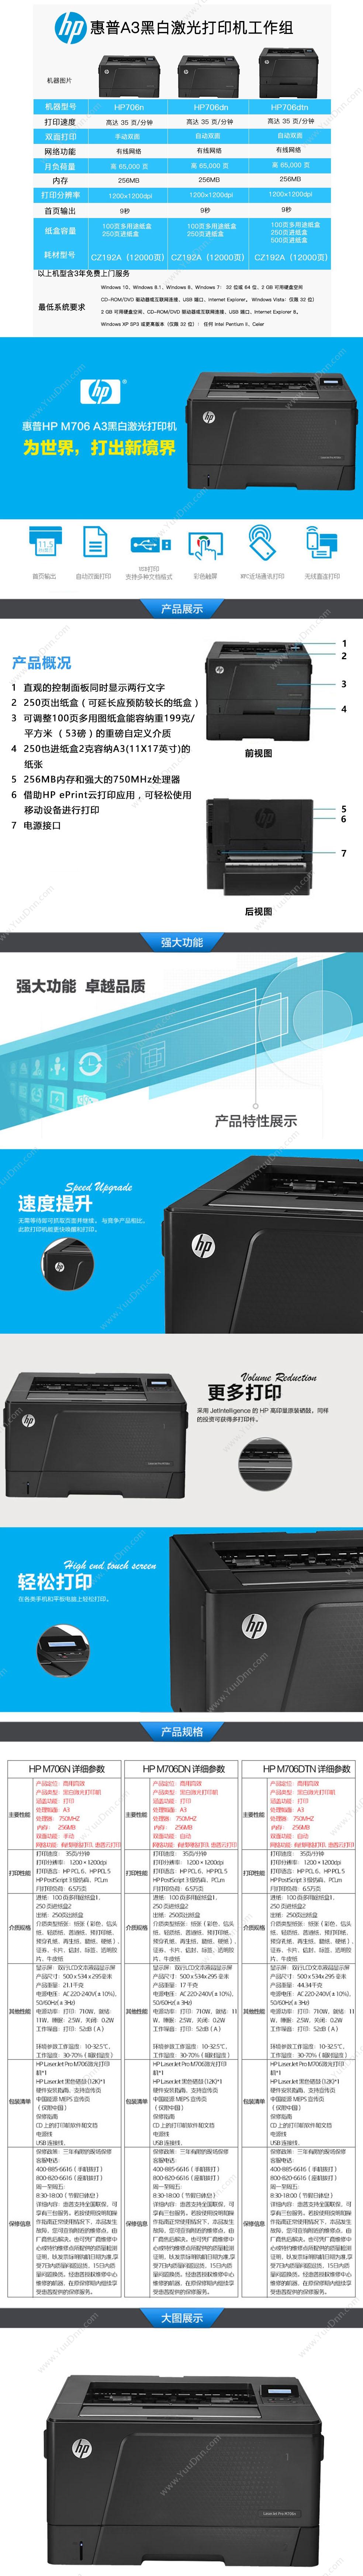 惠普 HP LaserJet Pro M706n+d+t    +双面打印+纸盒3年上门  速度35 A3黑白激光打印机